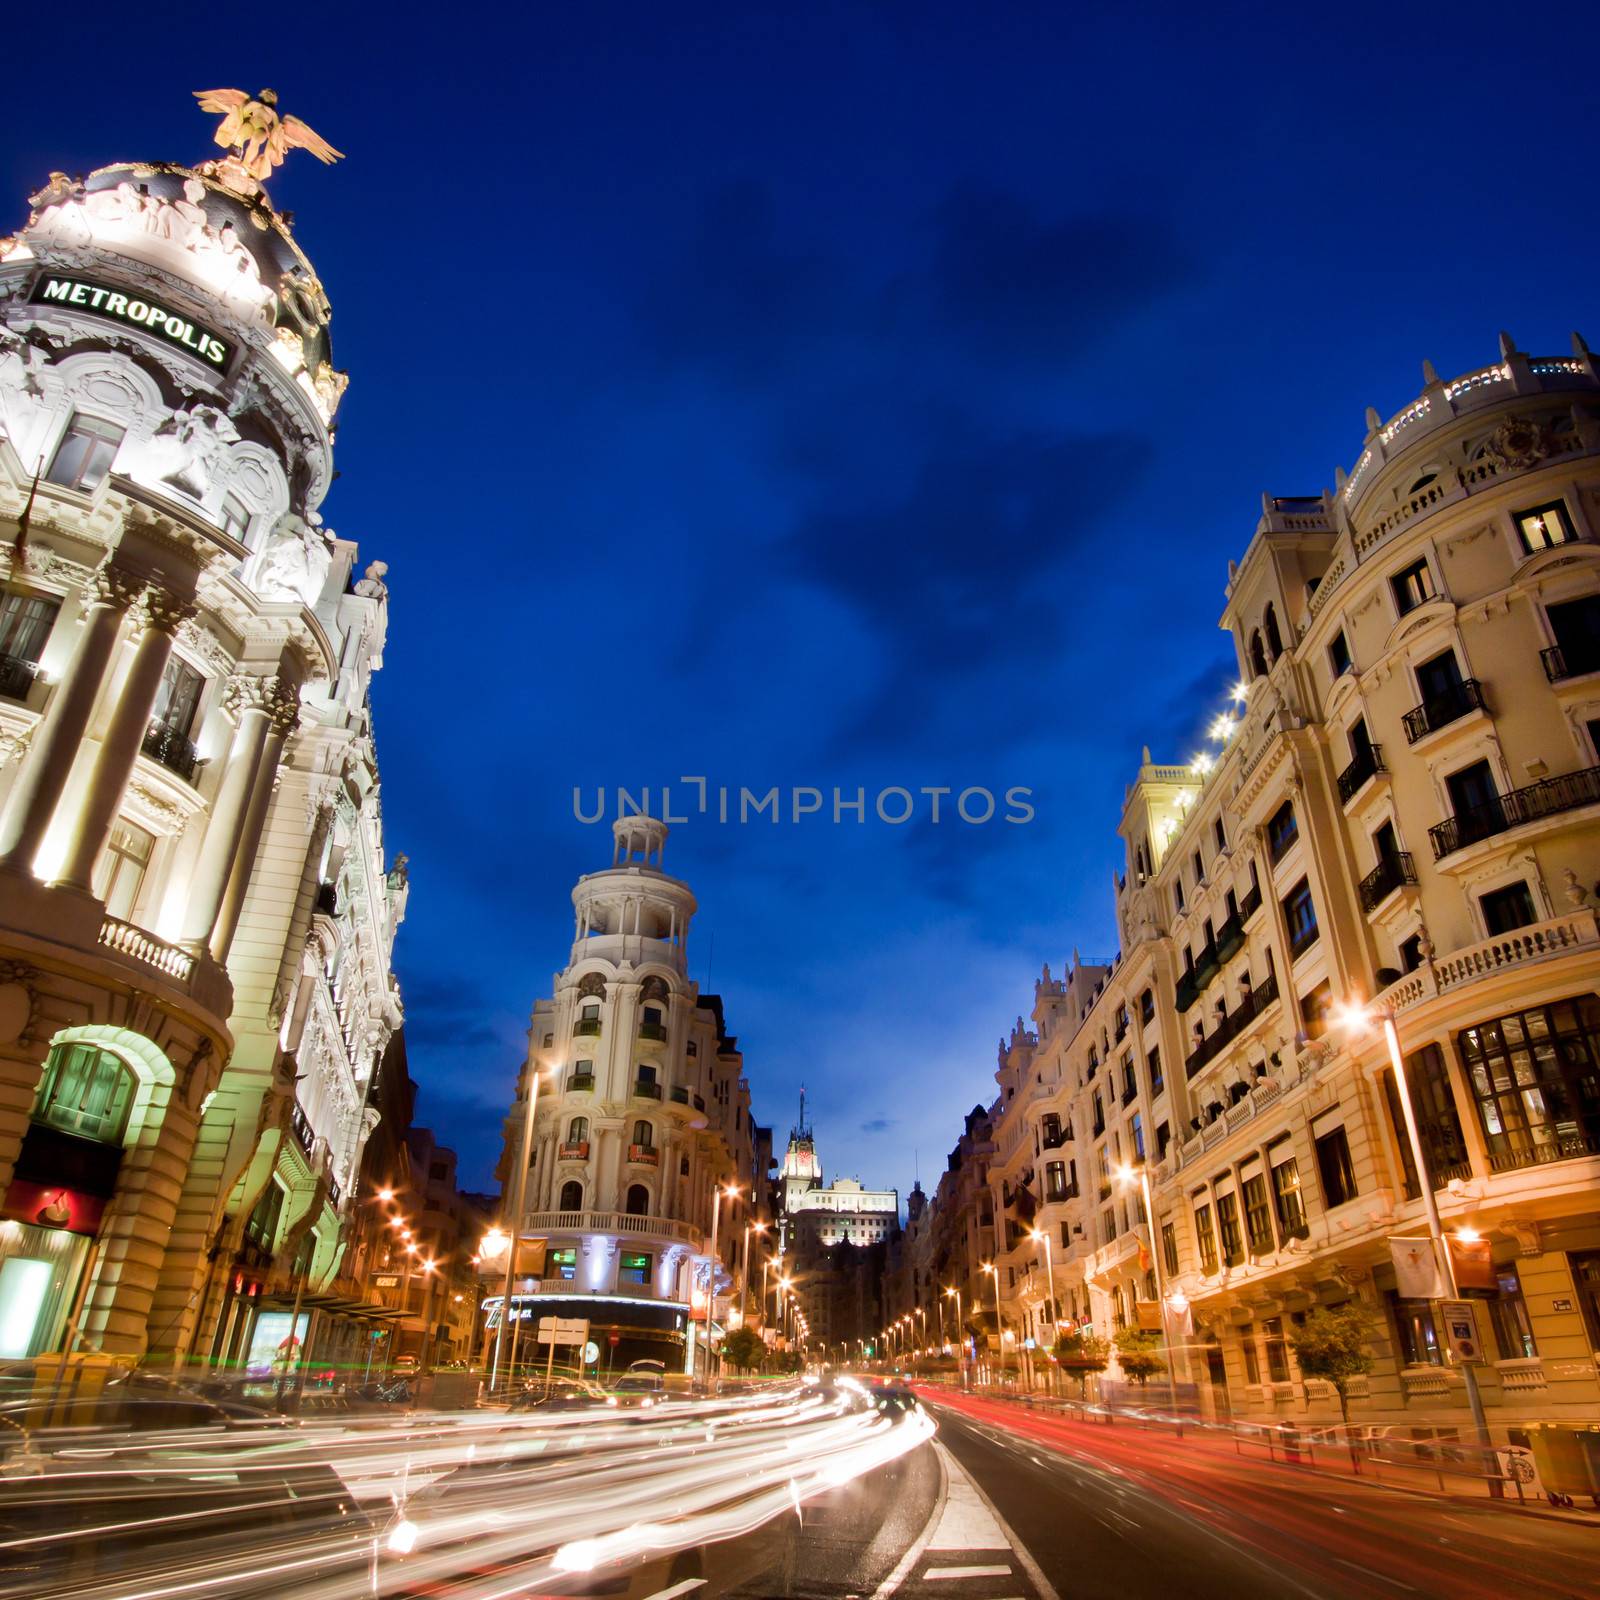 Gran via street, Madrid, Spain. by kasto